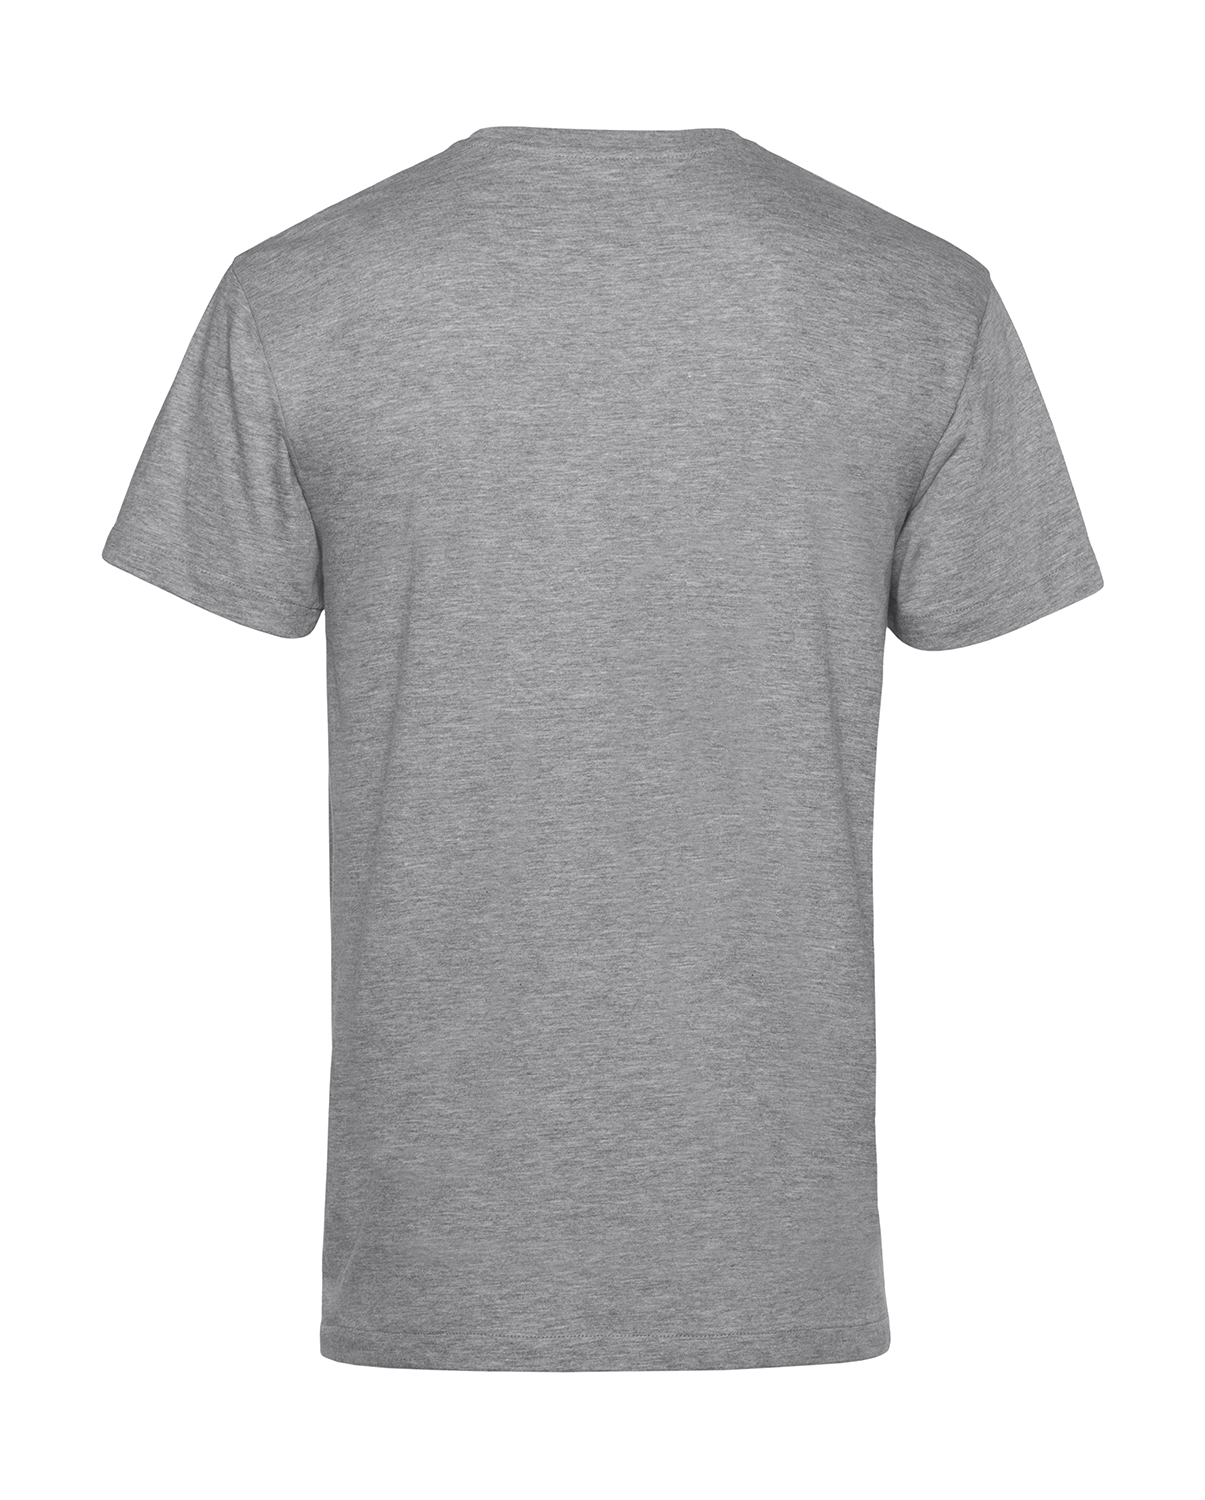 Unisex tričko Organic inspire Velikost: XL, Barva: Šedivá